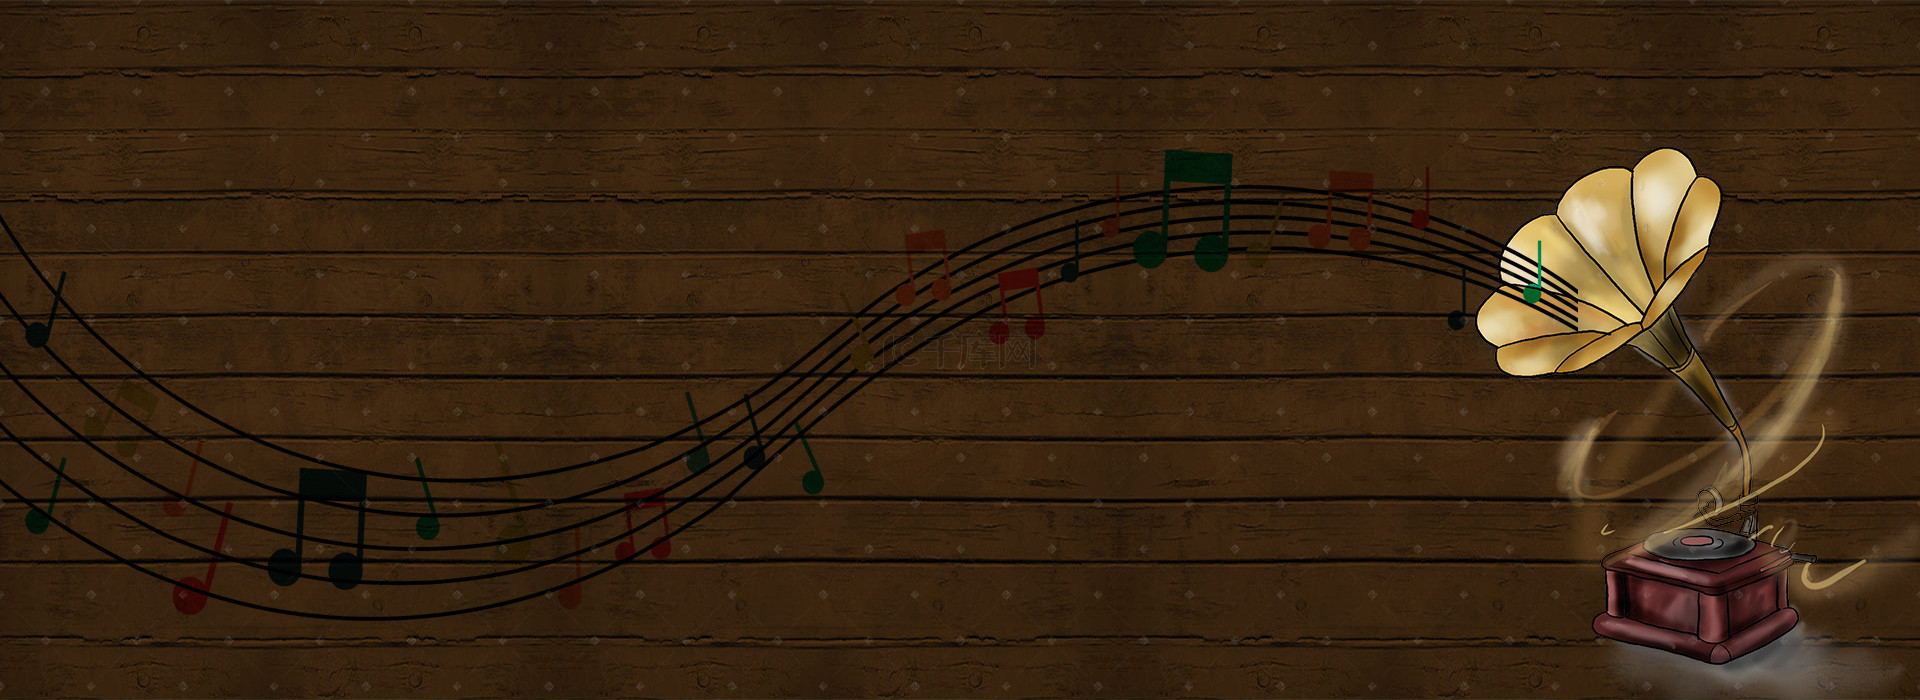 古铜色彩留声机组成的音乐背景图片